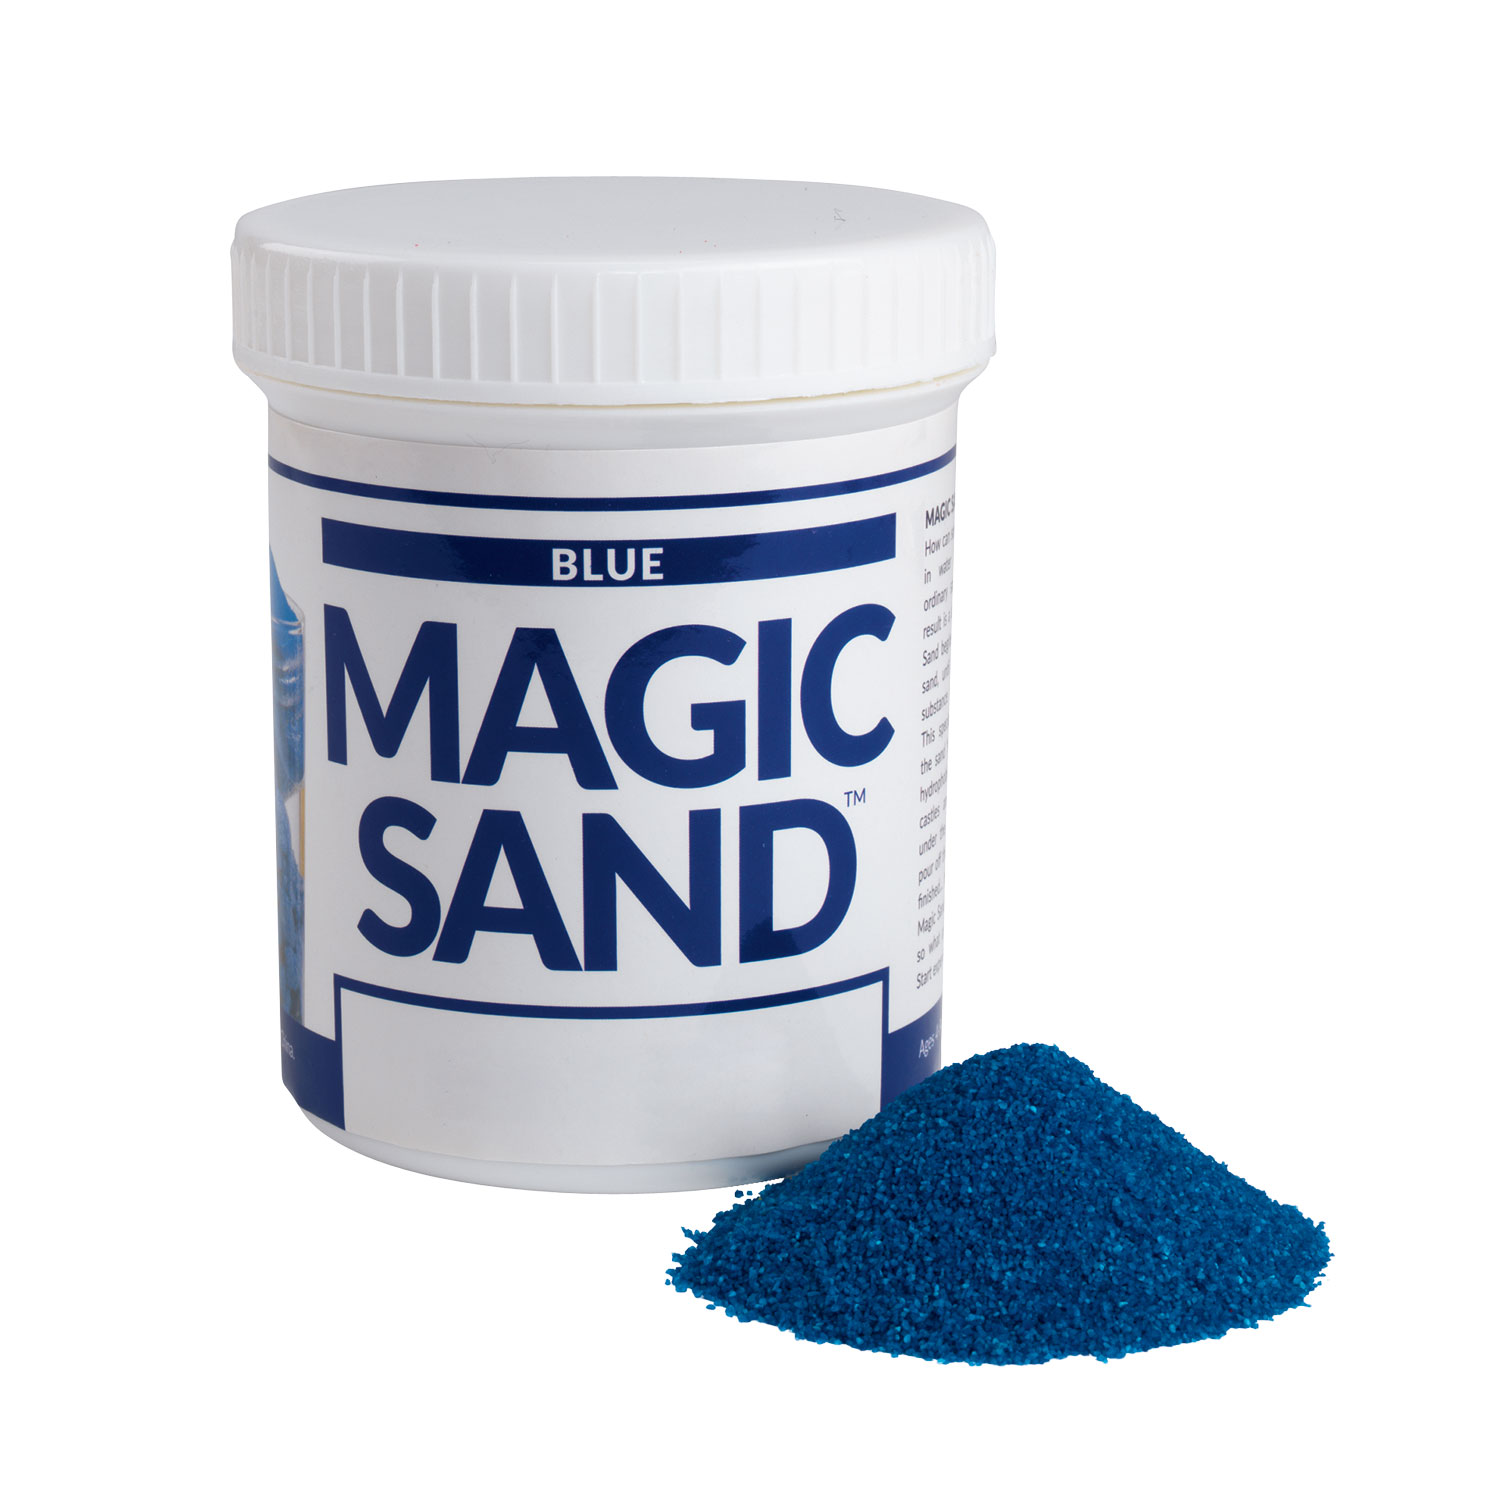 Magic Sand | Steve Spangler Science